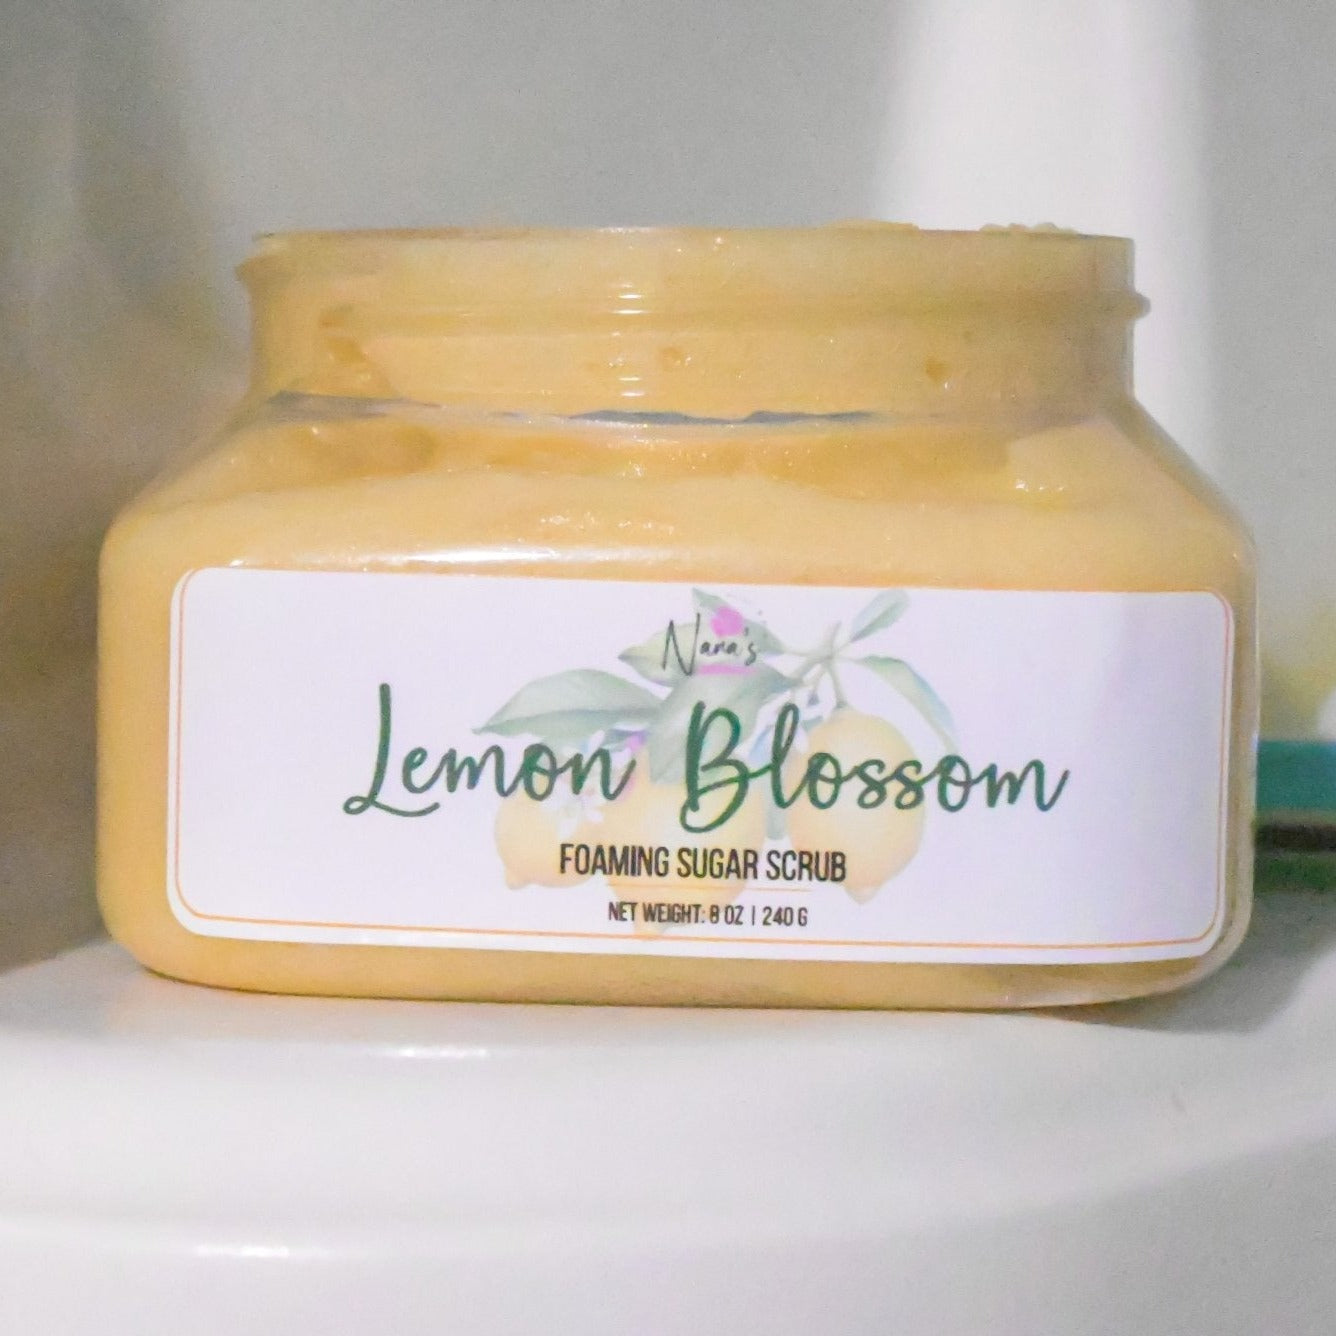 Lemon Blossom Foaming Sugar Scrub - Nana's Creative Studio